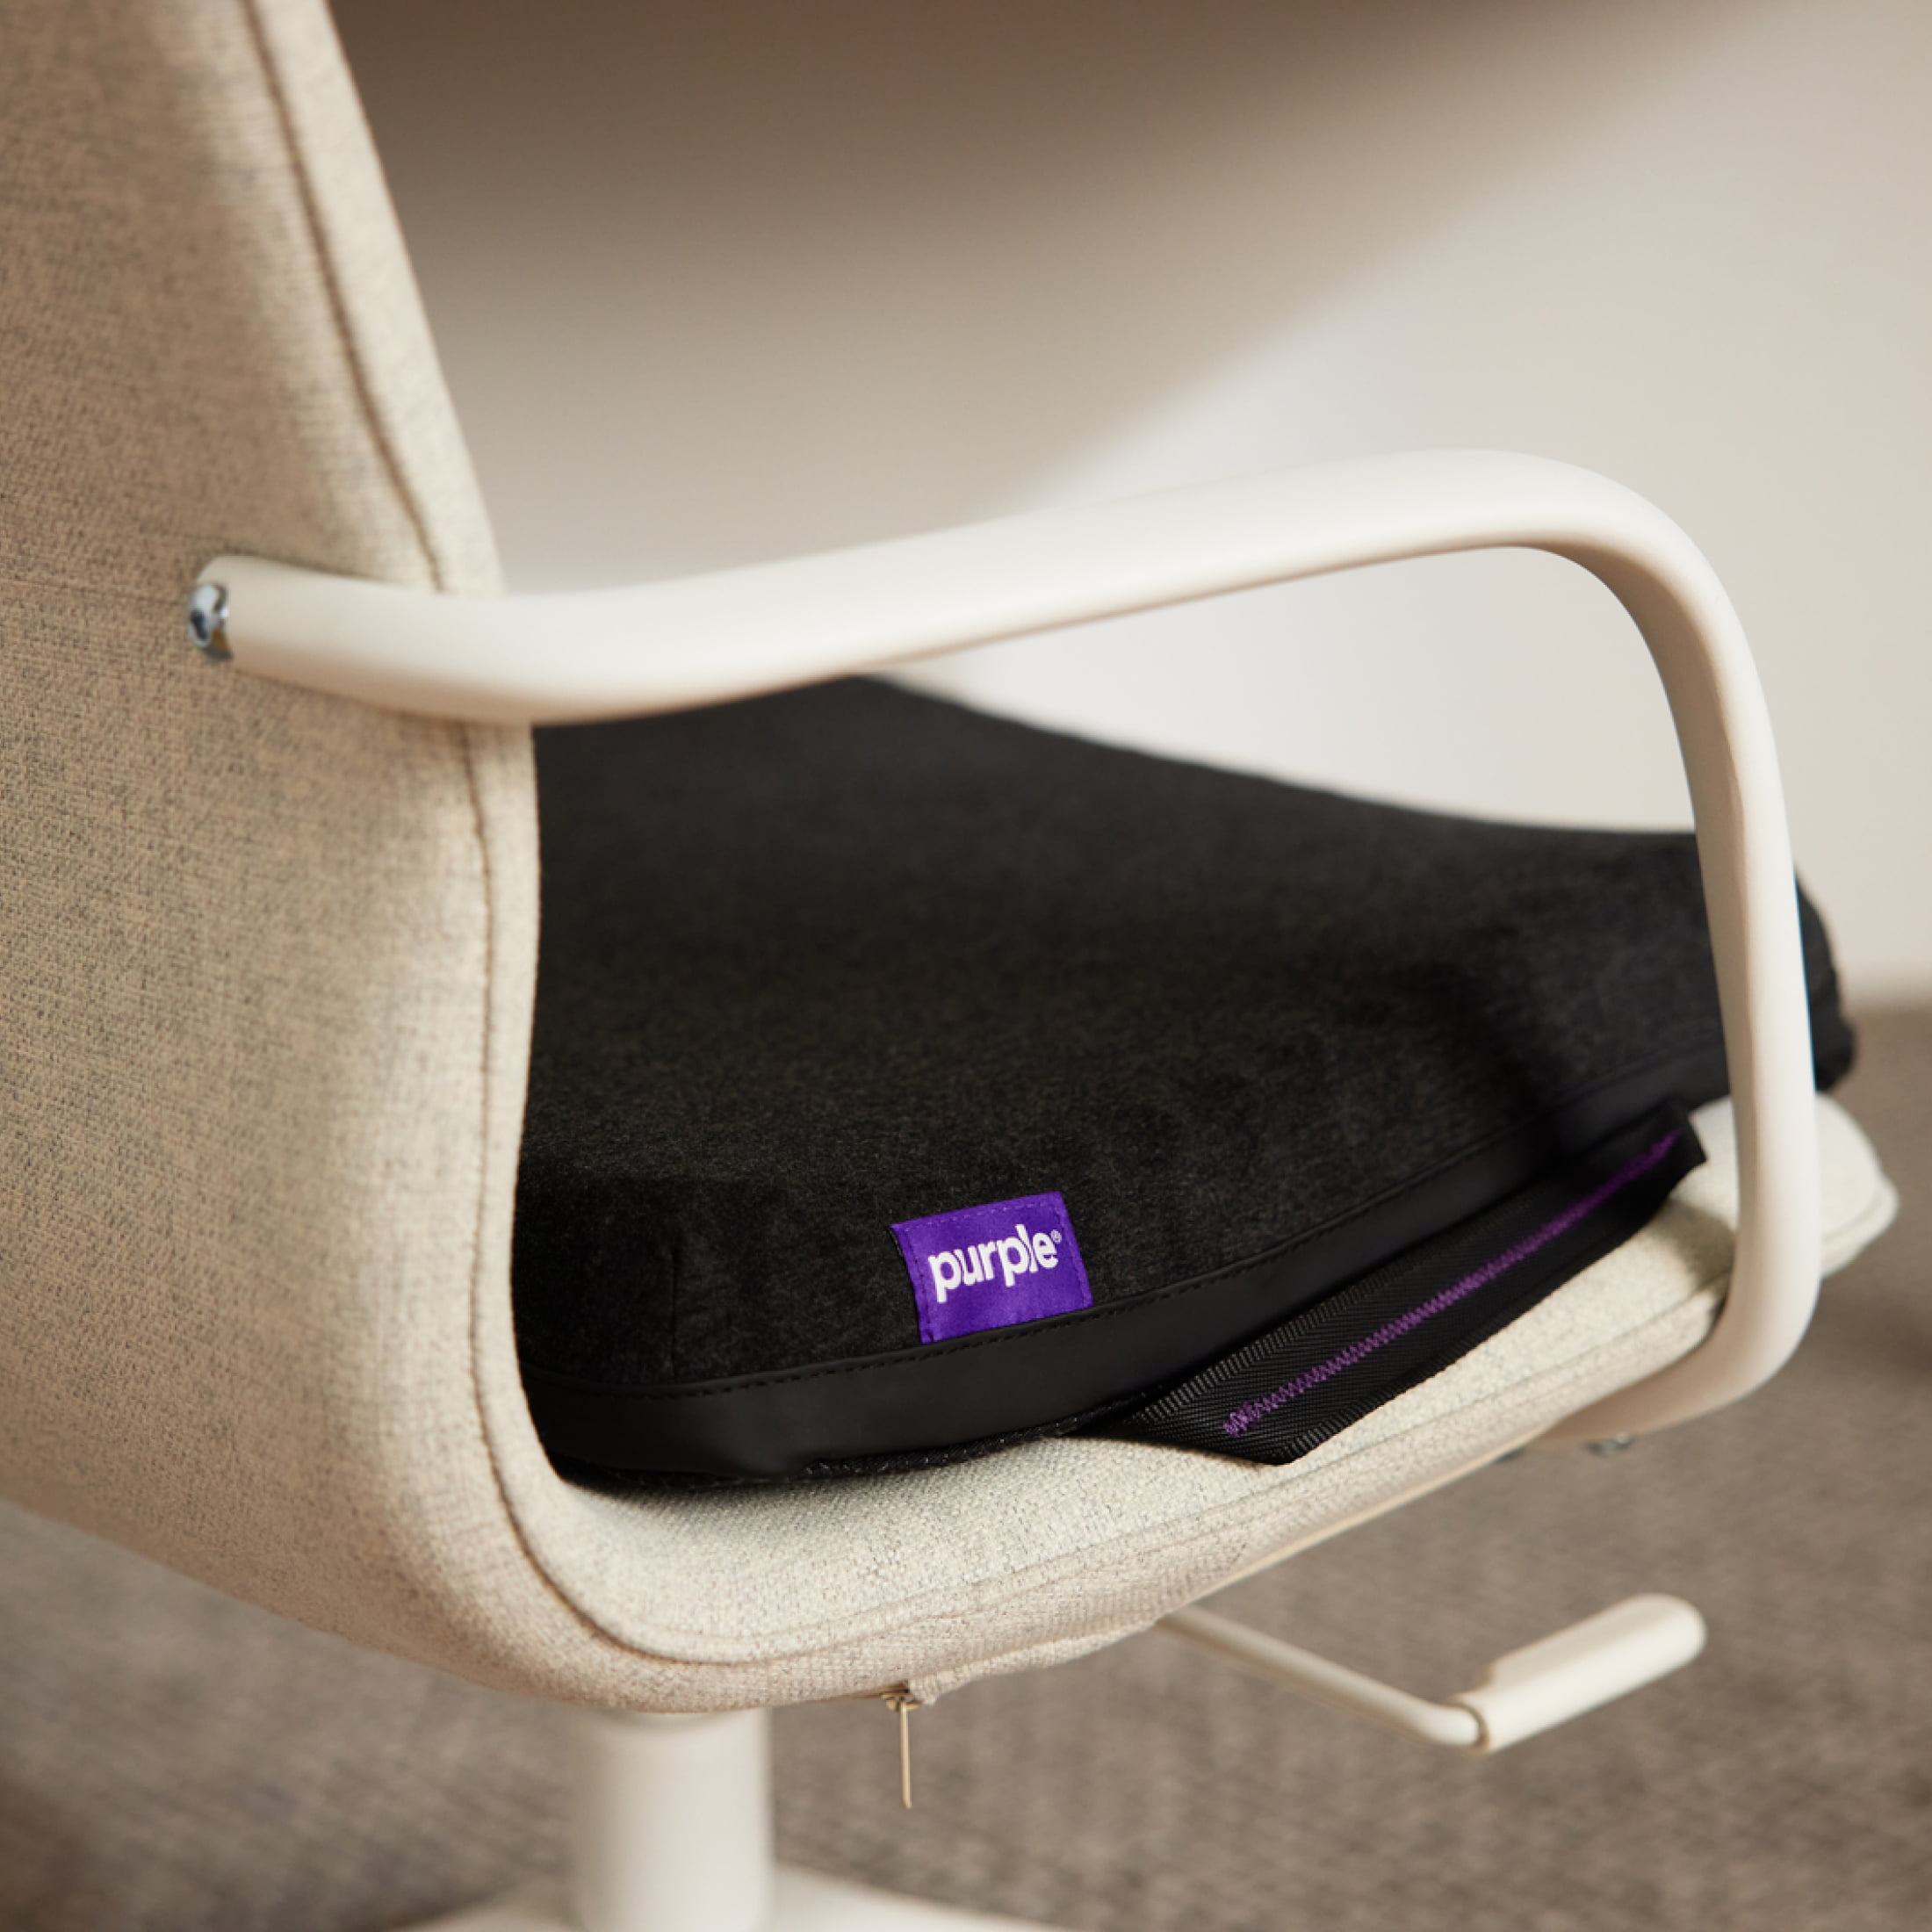 Purple Royal Seat Cushion 17.5“ x 15.75“, Temperature Neutral